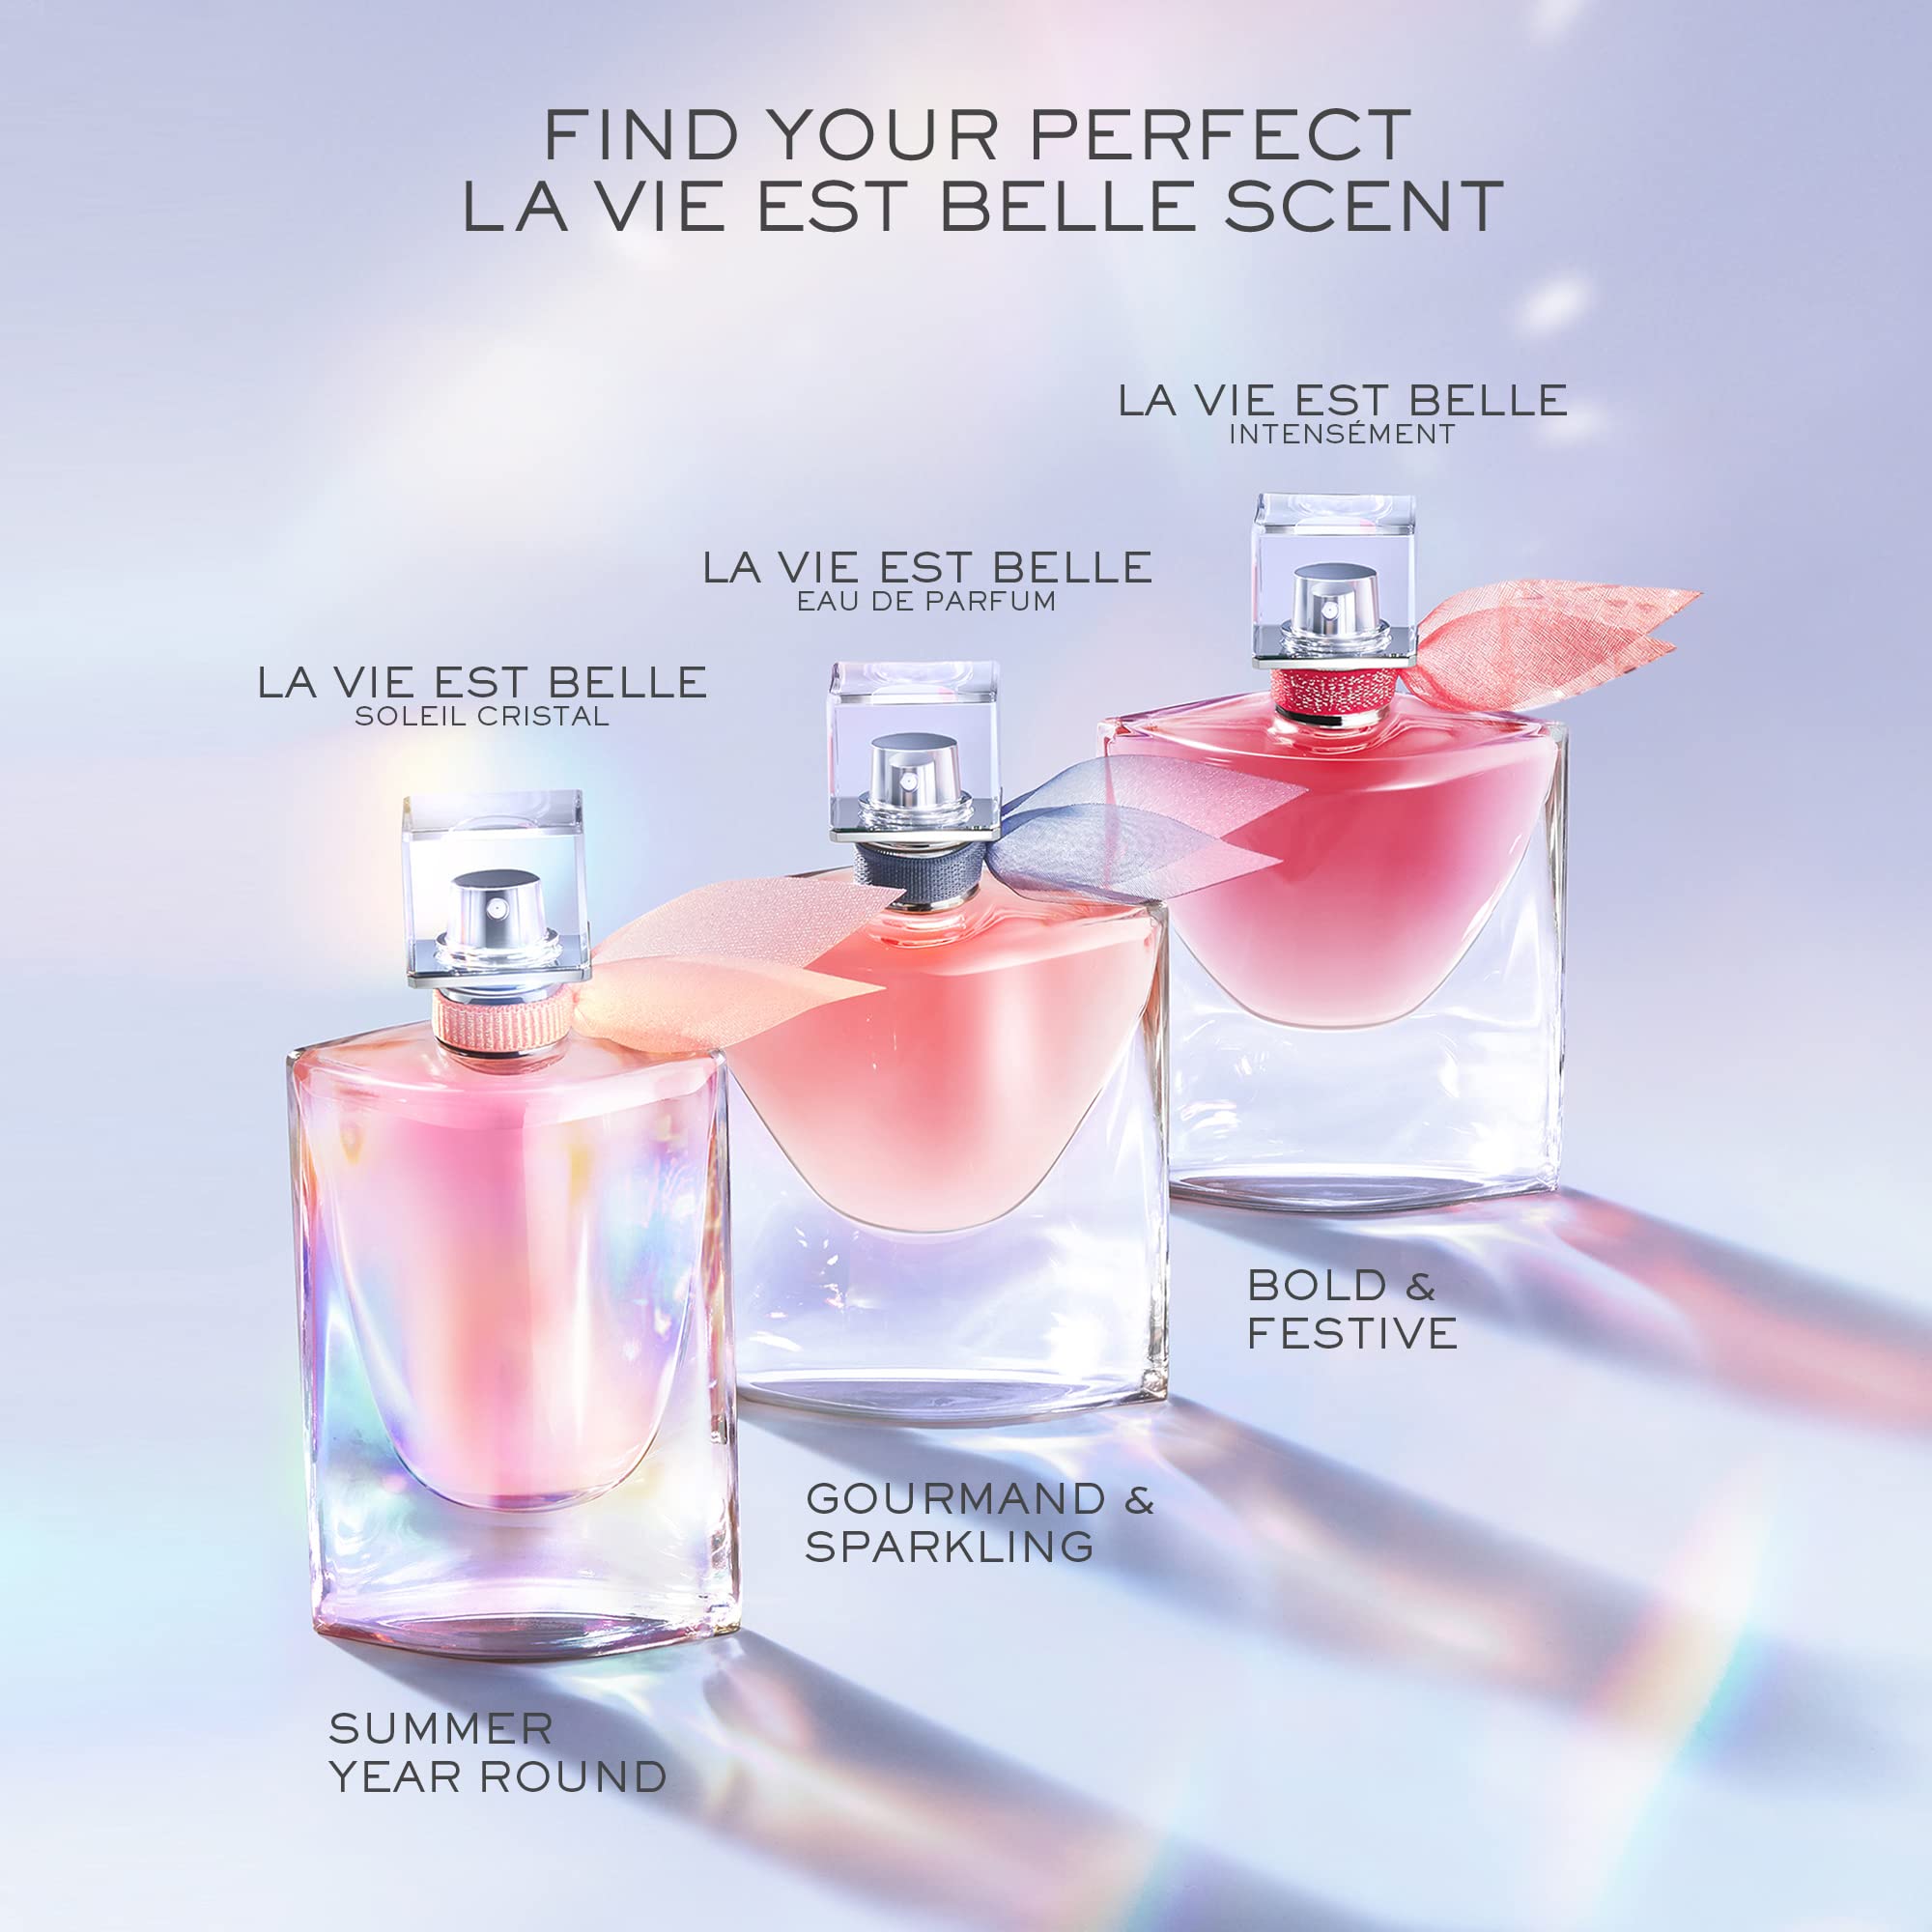 Lancôme La Vie Est Belle Eau de Parfum - Floral & Sweet Women's Perfume​ - With Iris, Patchouli & Vanilla - Long Lasting Fragrance